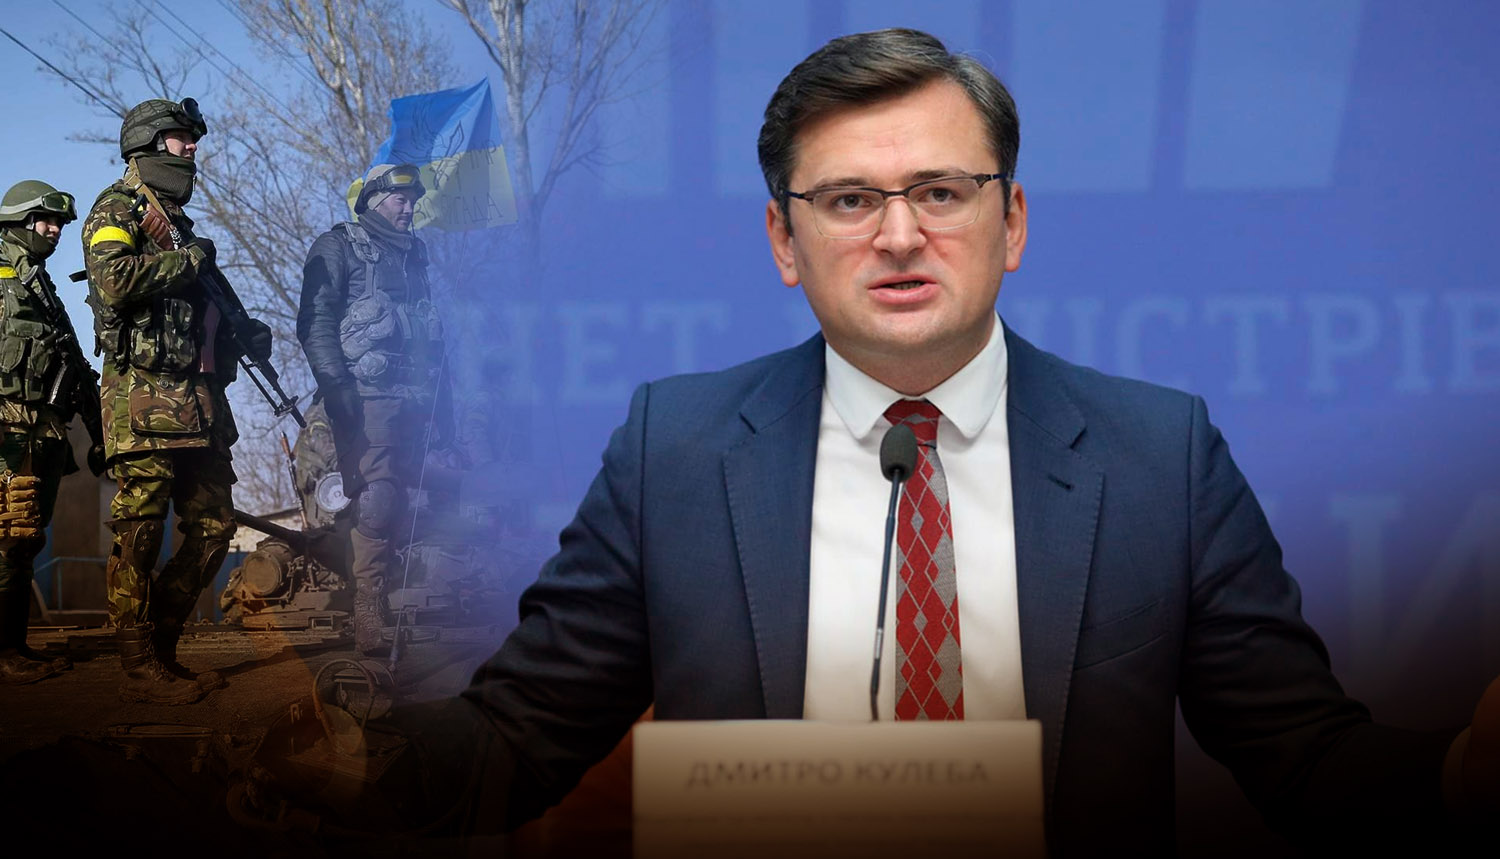 Киев не собирается проводить военную операцию в Донбассе, заявил глава МИД Украины